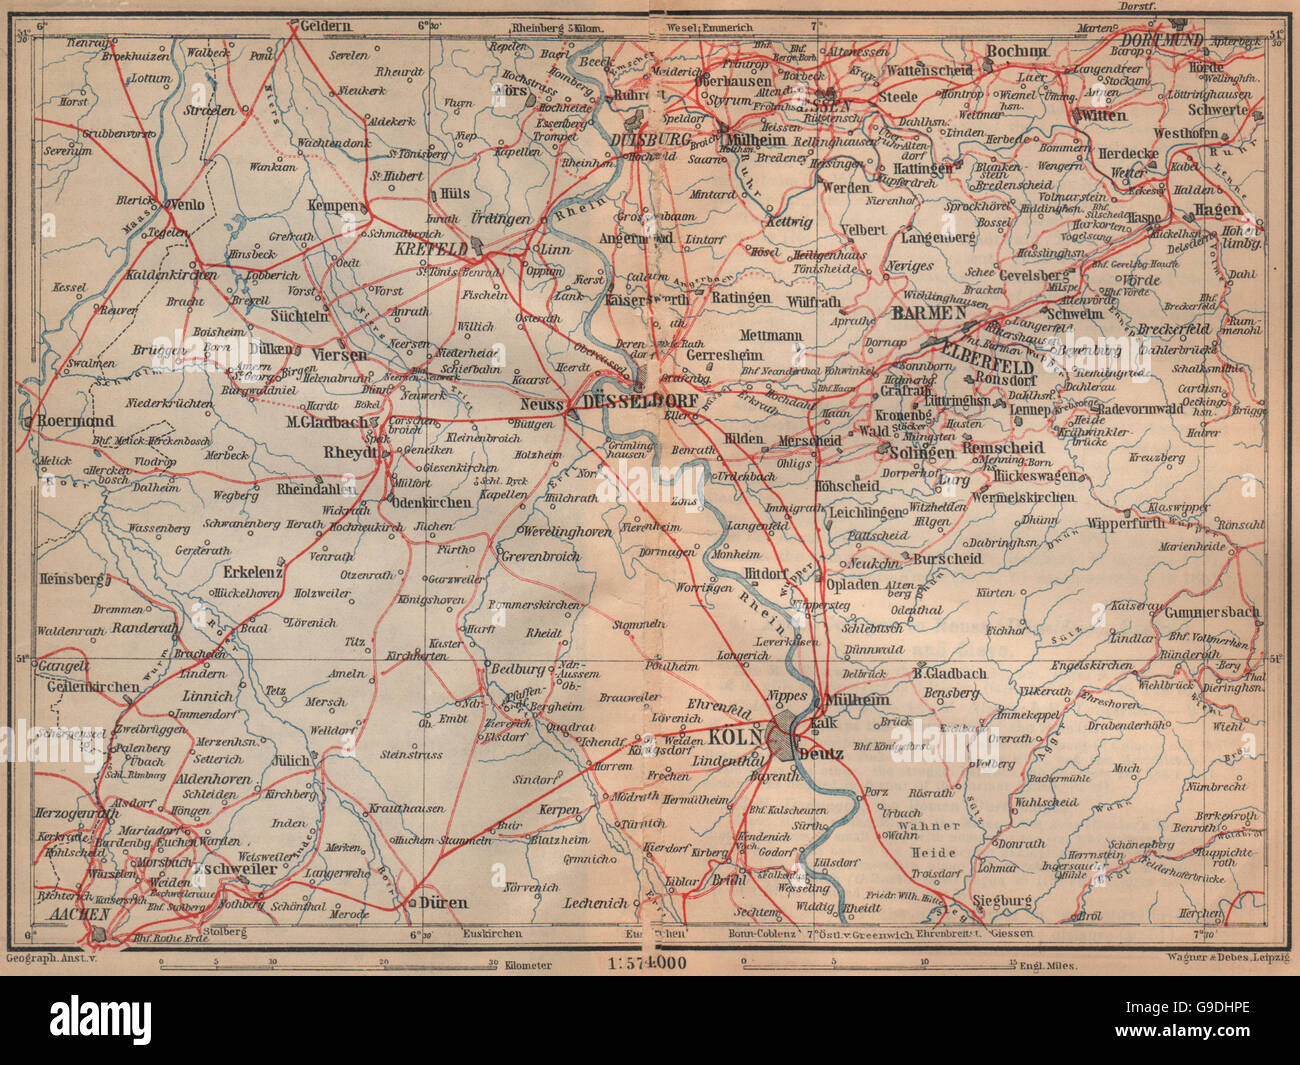 Metropolregion Rhine/Rhein-Ruhr Eisenbahnen Köln Dusseldorf Duisburg, 1903 map Stock Photo